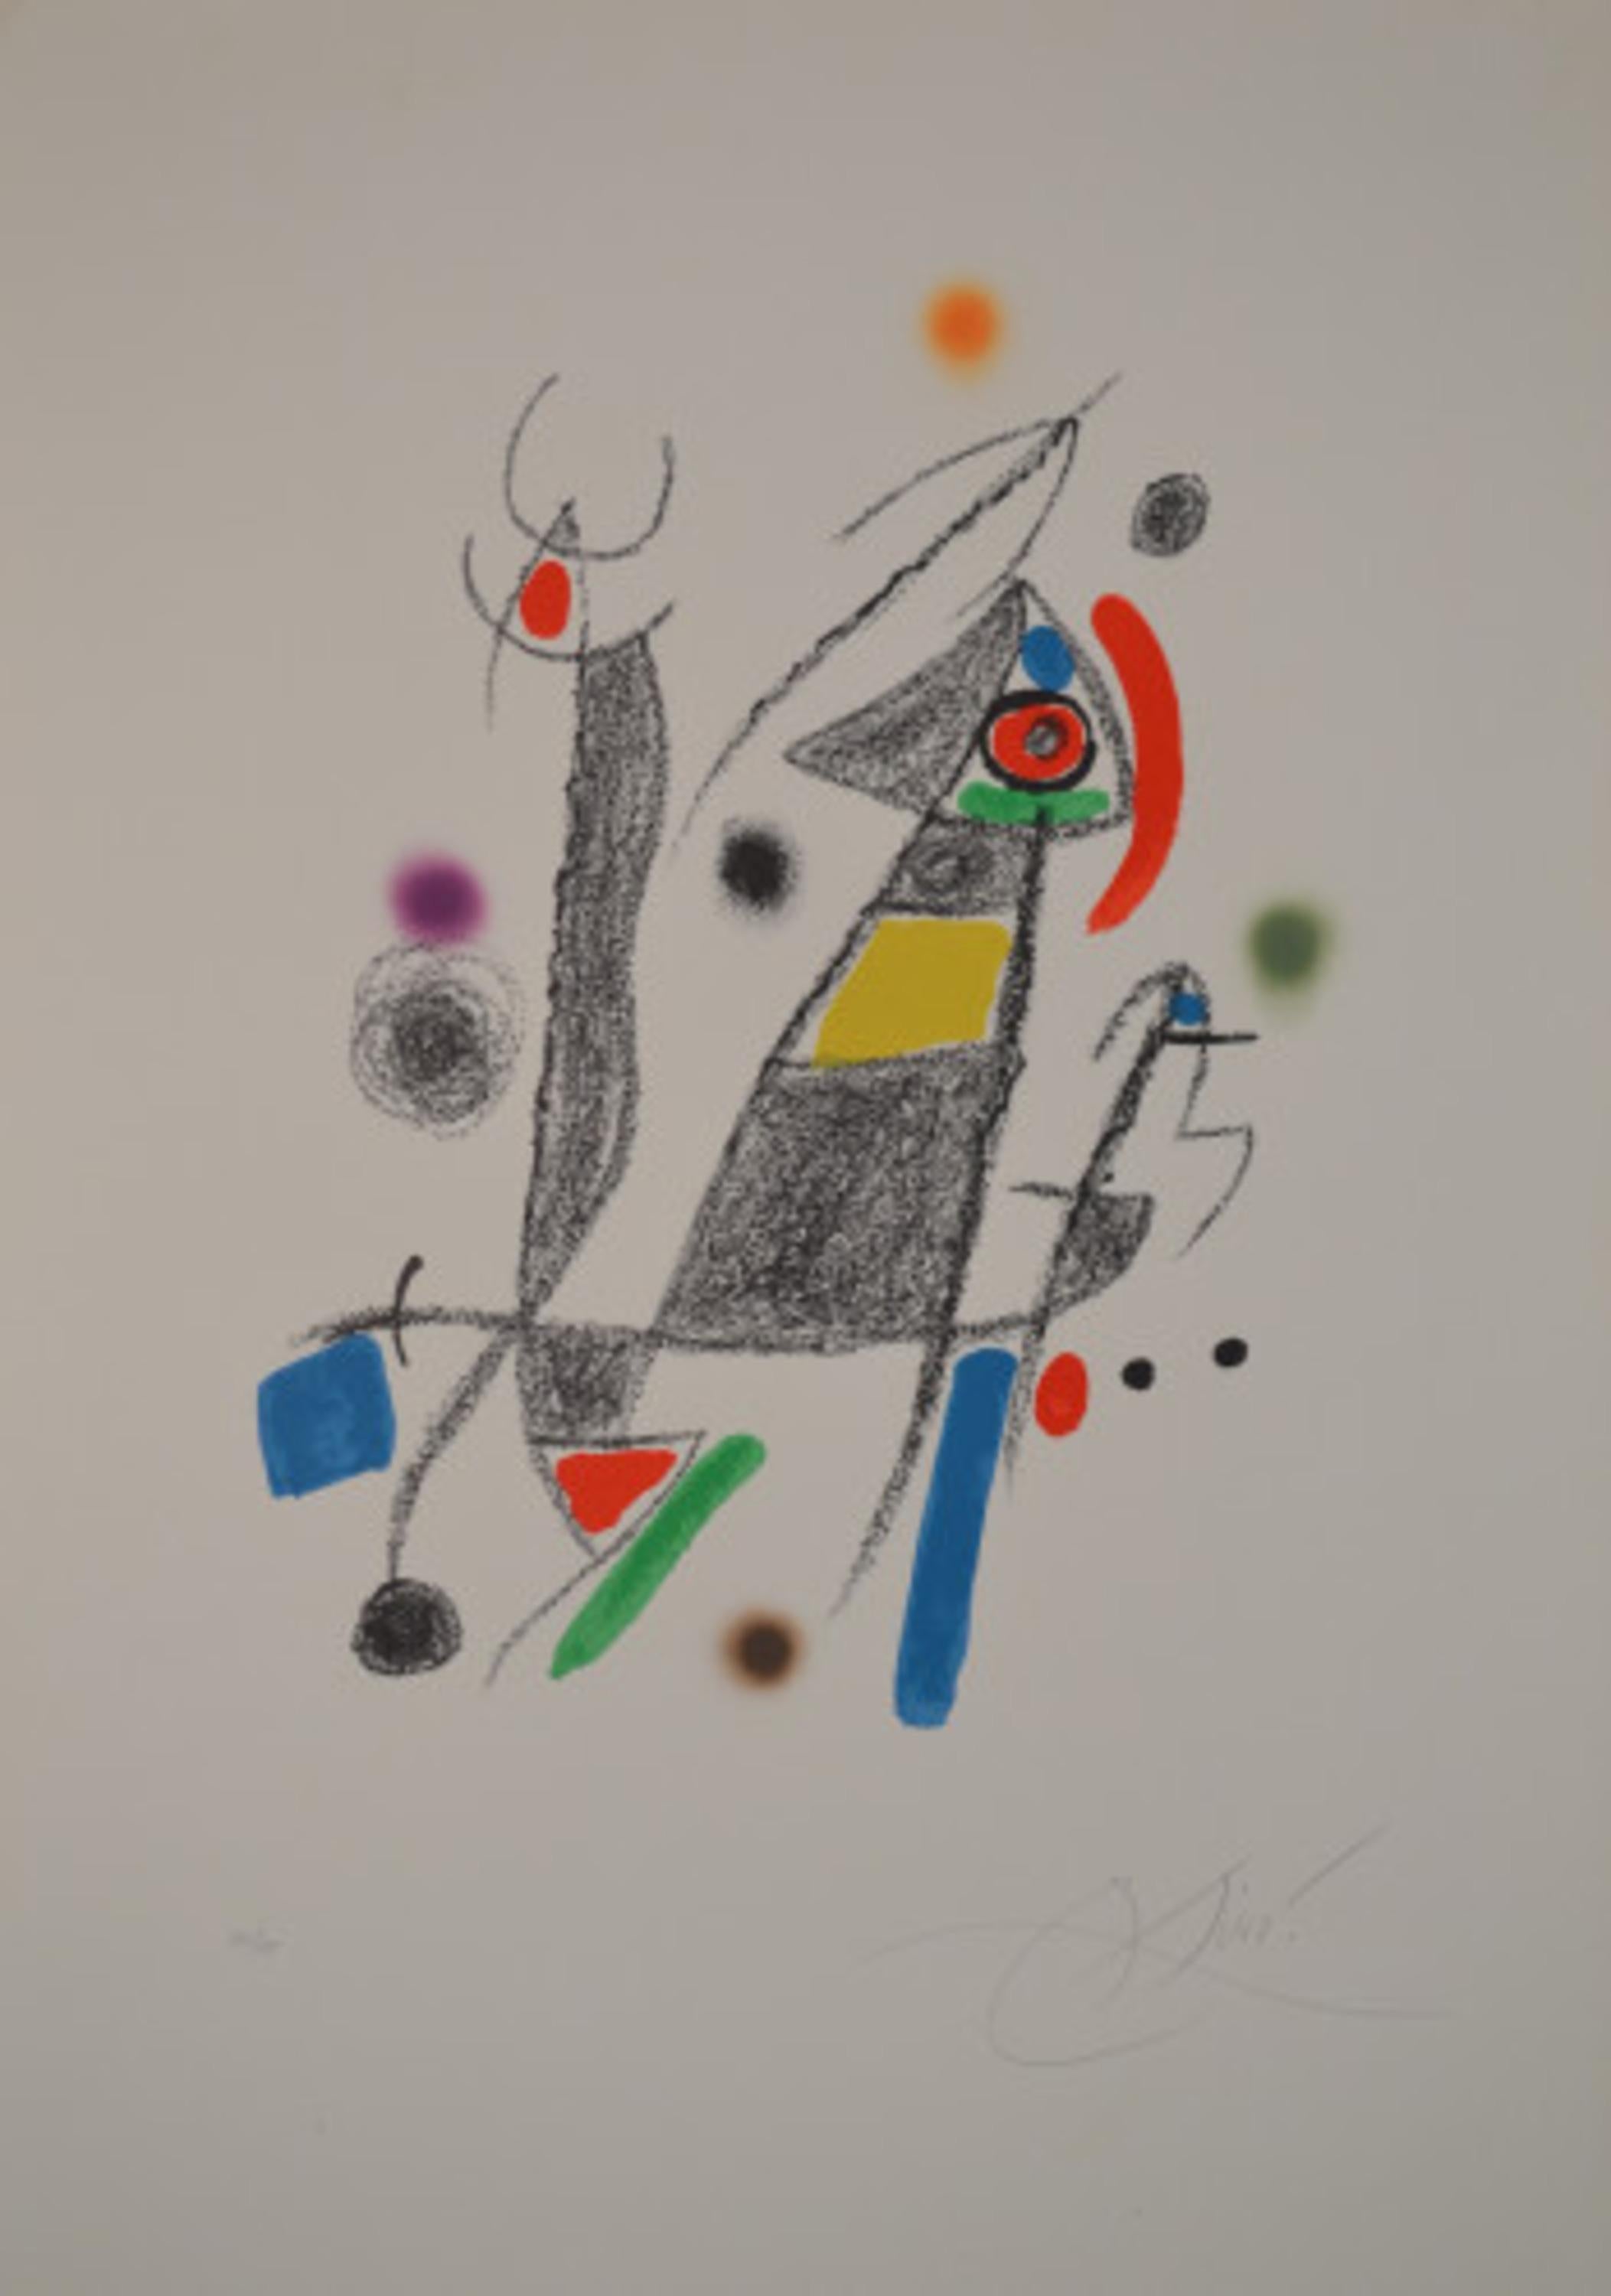 Maravillas - M1058 - Print by Joan Miró